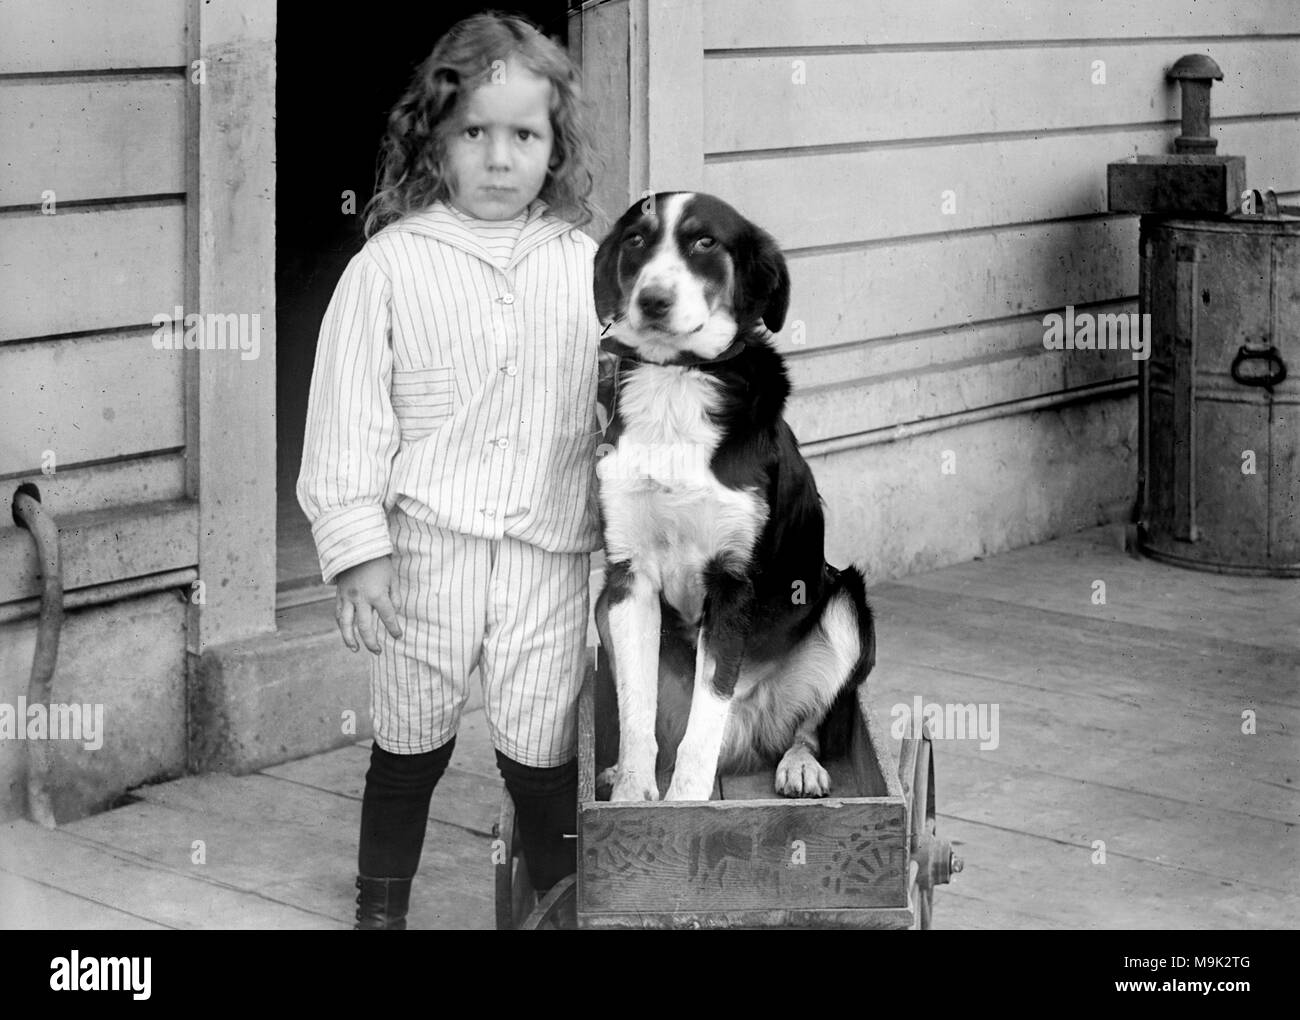 Un jeune garçon se distingue avec son chien perché dans un wagon, ca. 1905. Banque D'Images